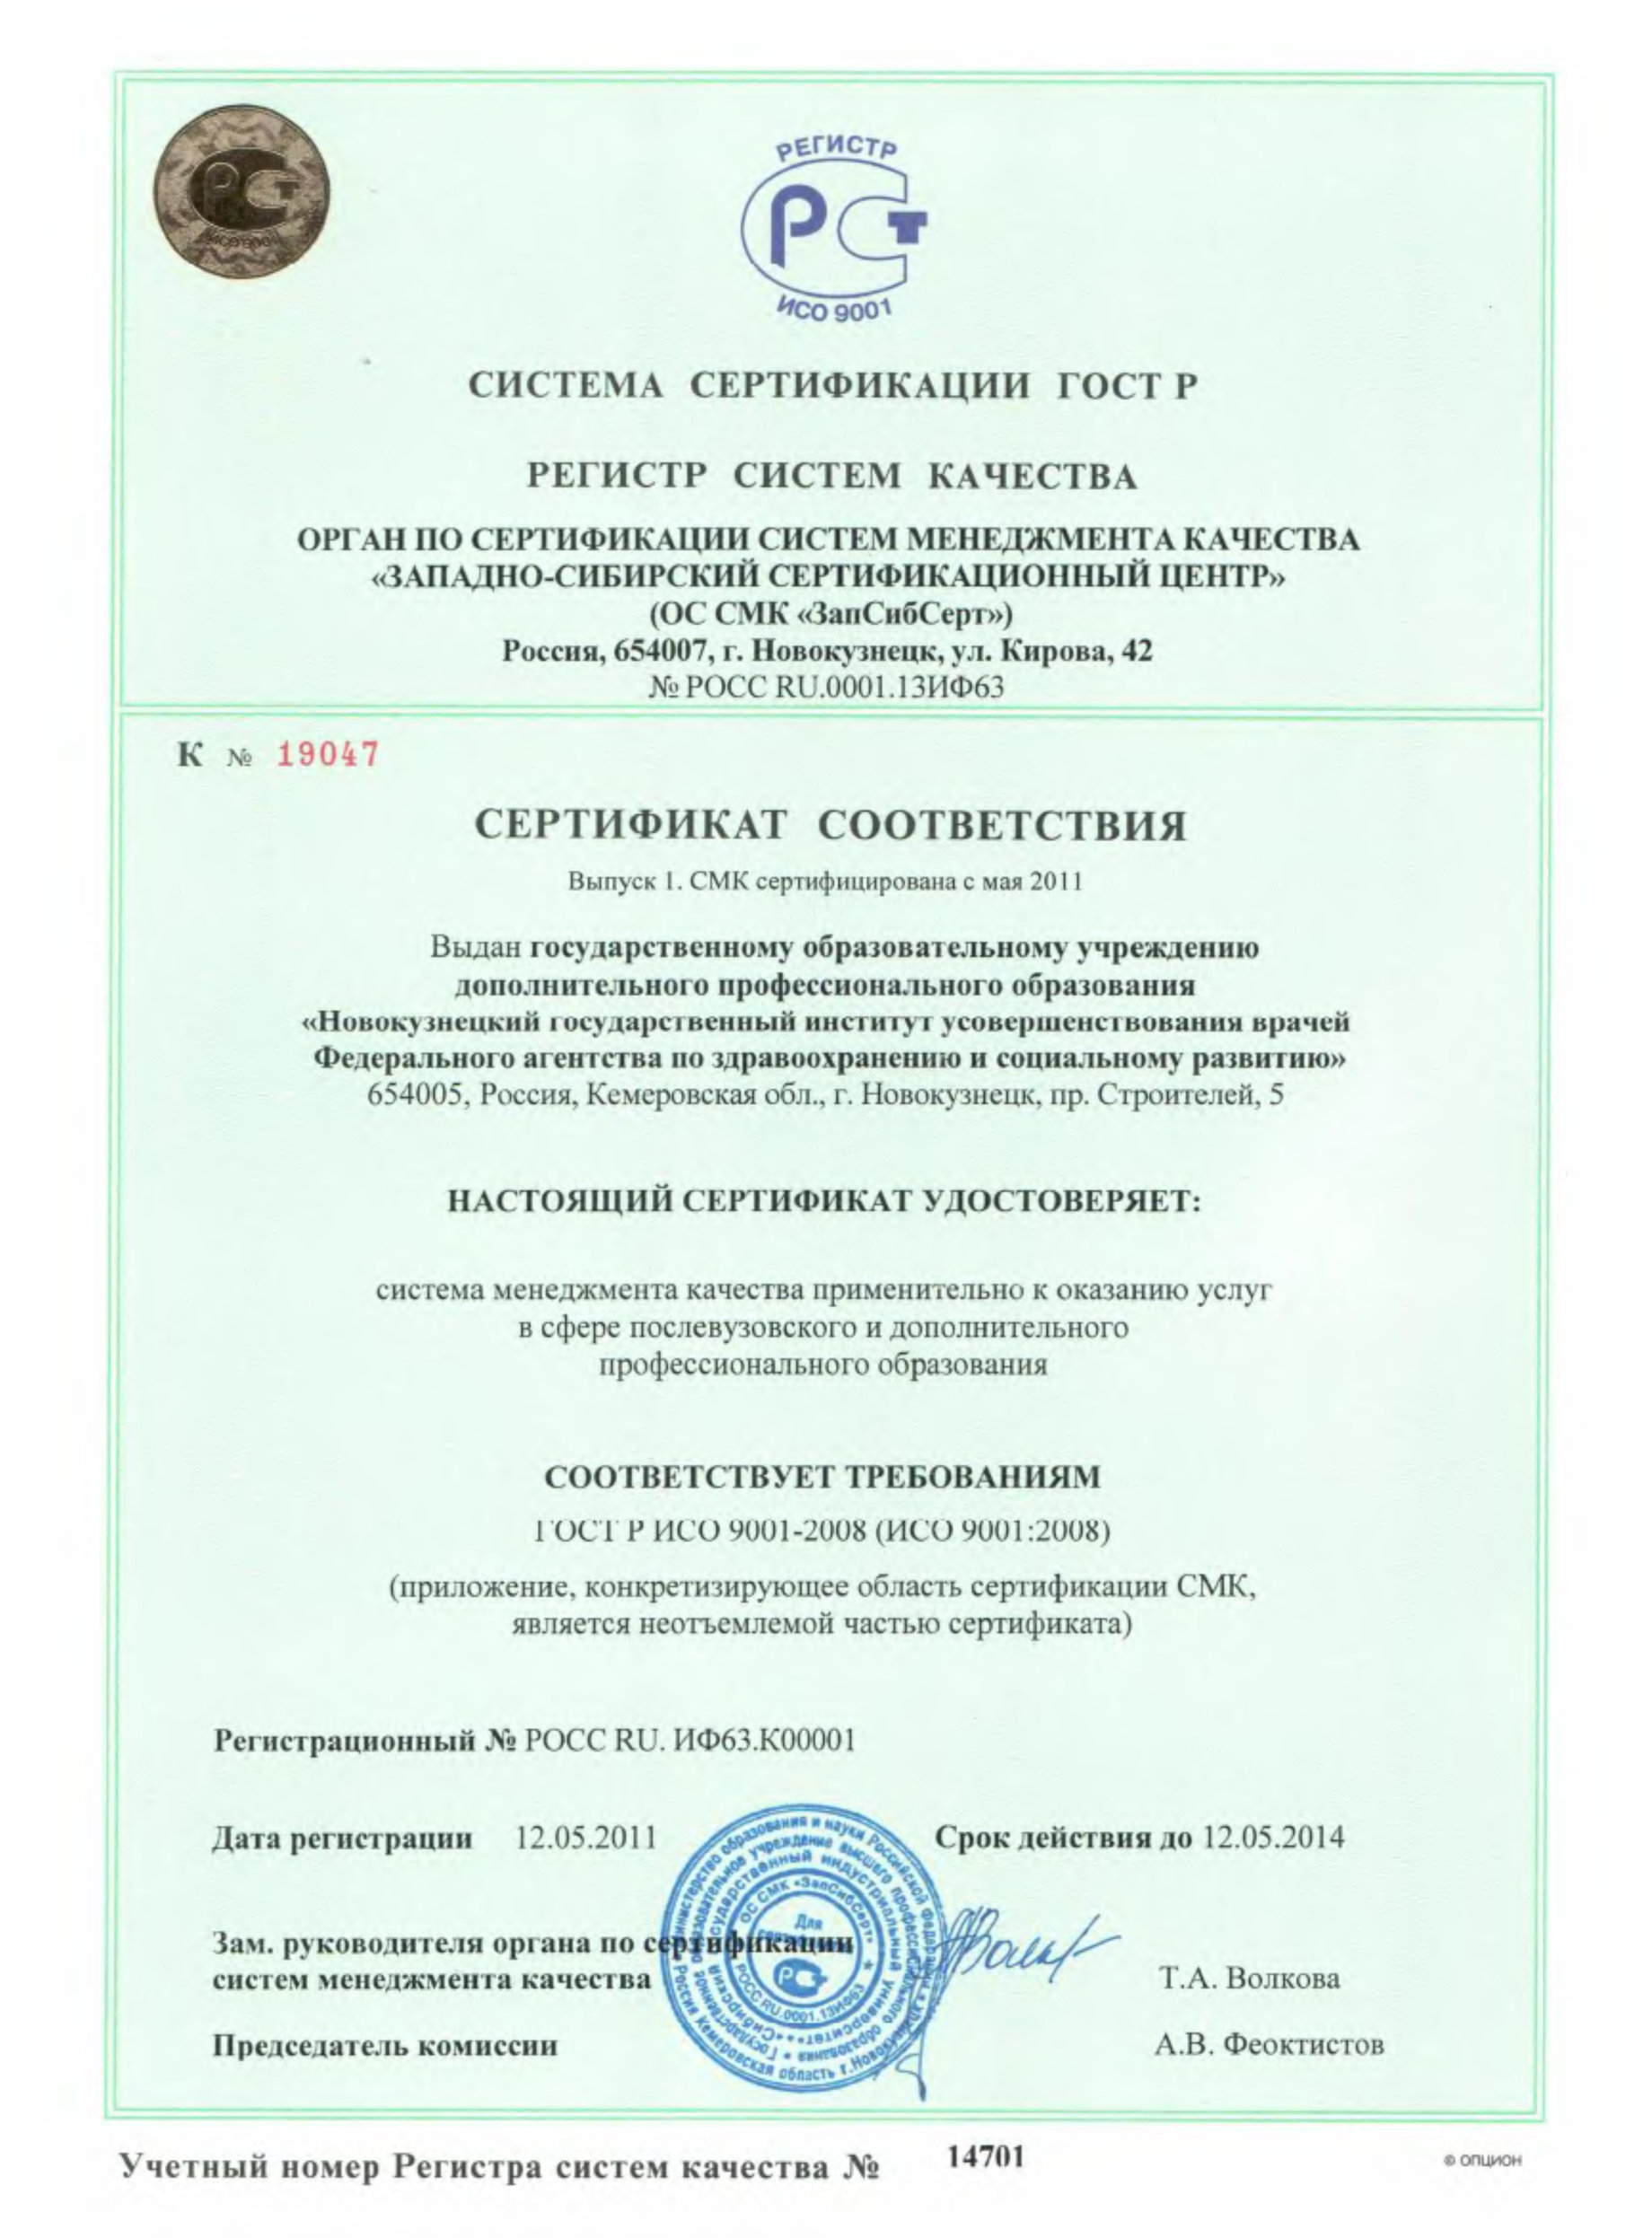 Образец заполнения сертификата соответствия (на русском языке)